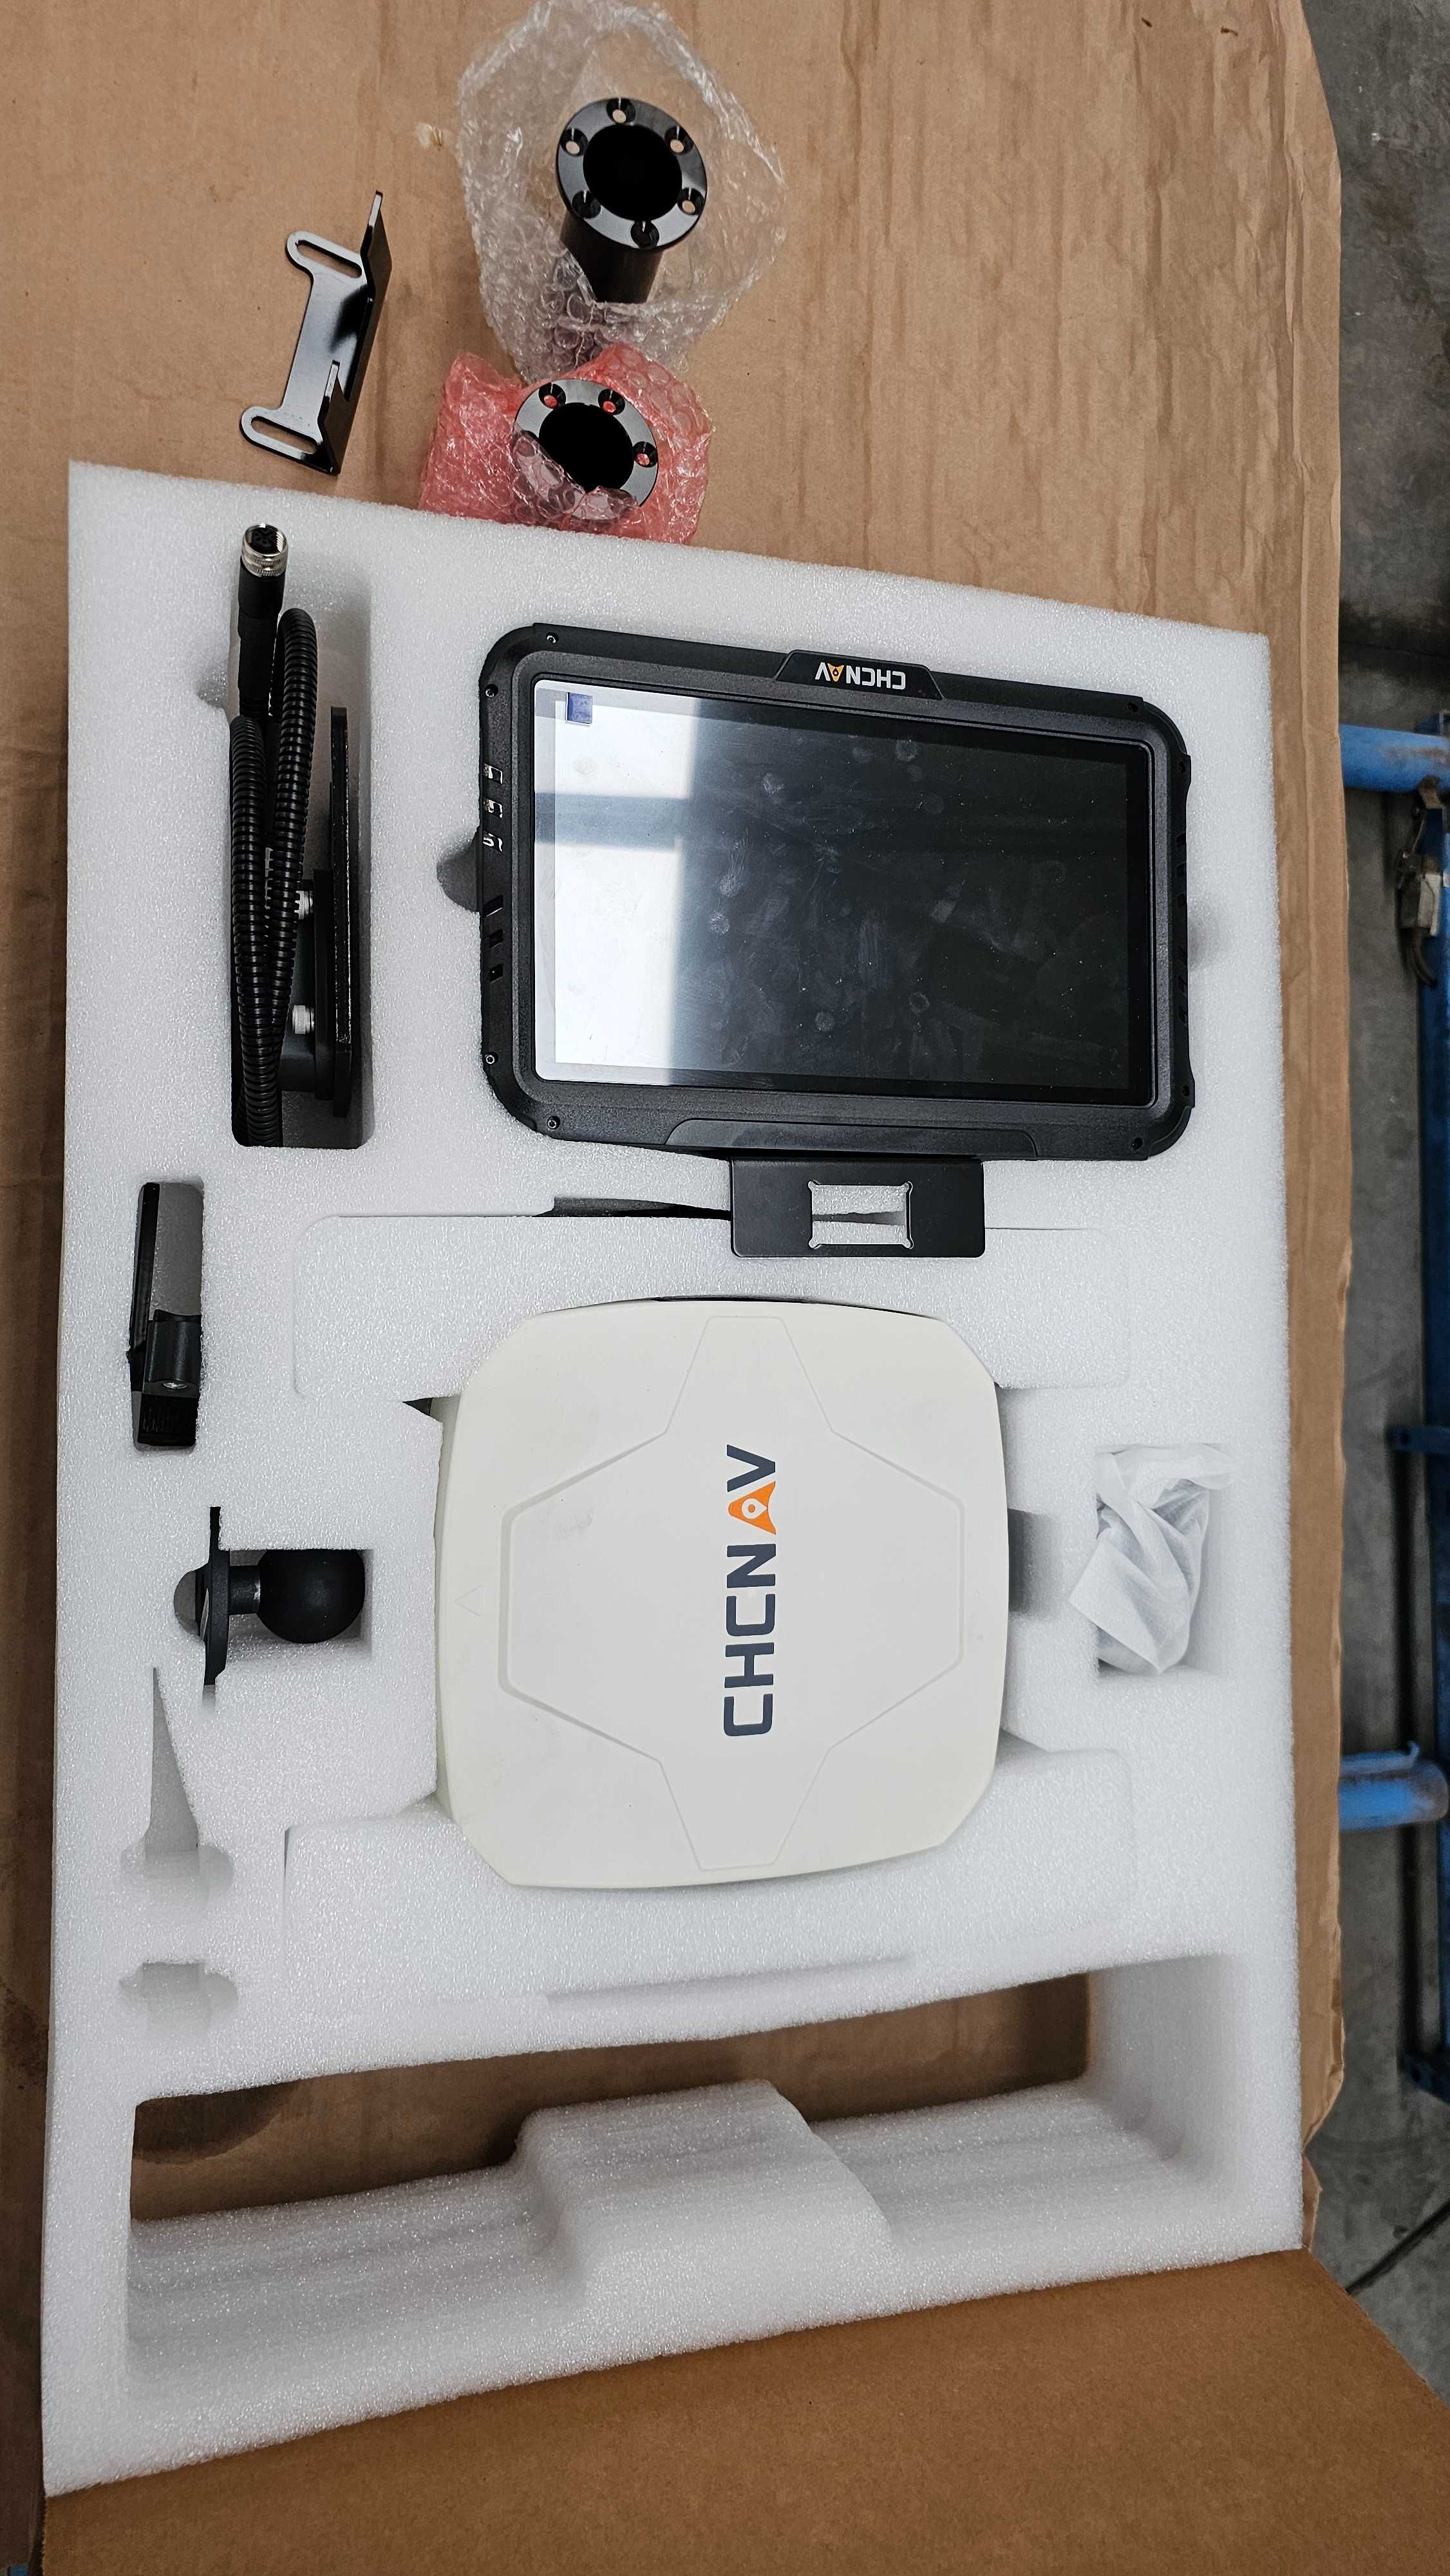 Nawigacja rolnicza CHCNAV sprzedaż i montaż RTK 2,5cm GPS